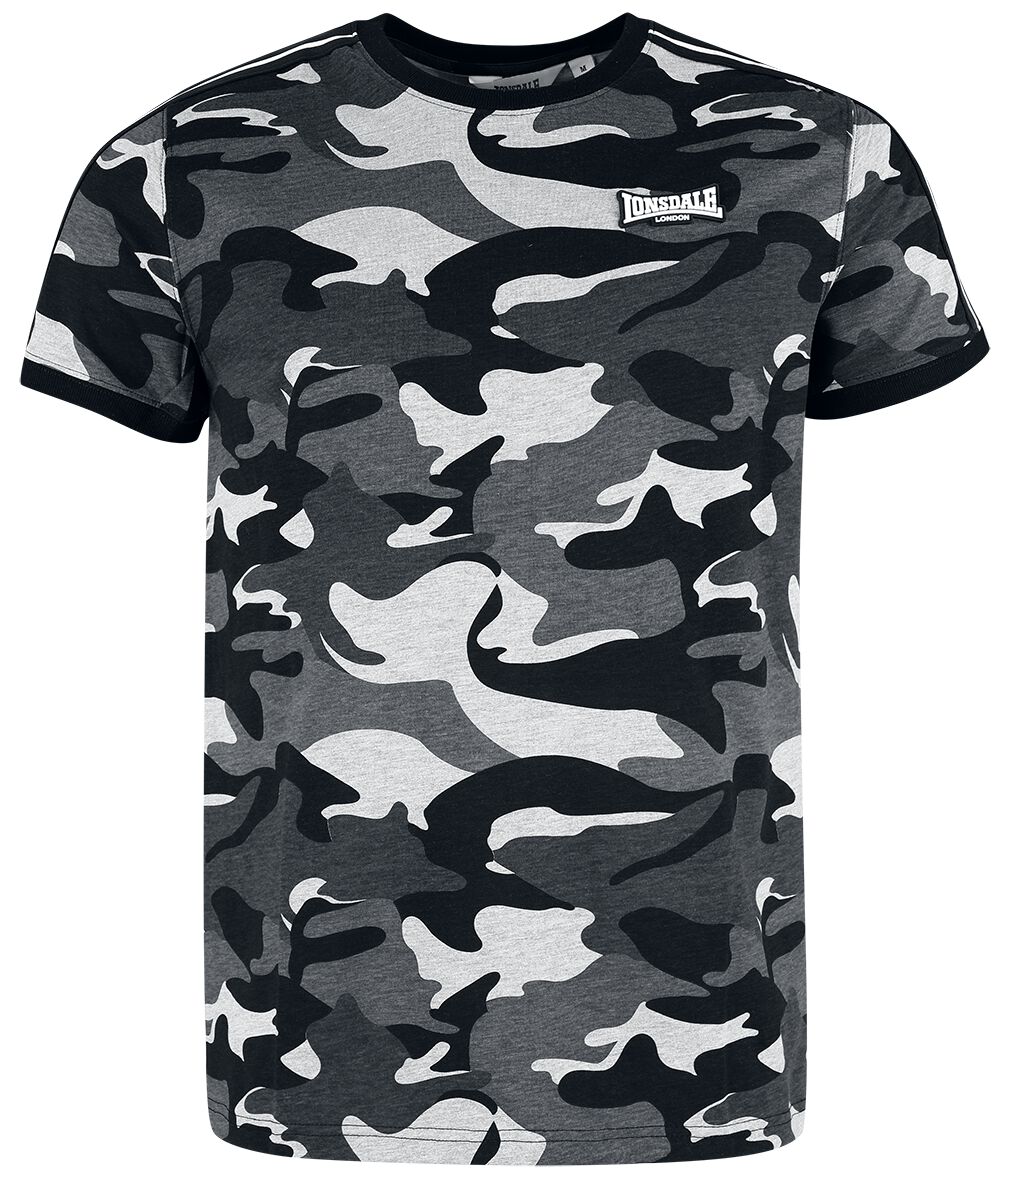 Lonsdale London - Camouflage/Flecktarn T-Shirt - GUNNISTA - S bis XXL - für Männer - Größe XXL - graucamo